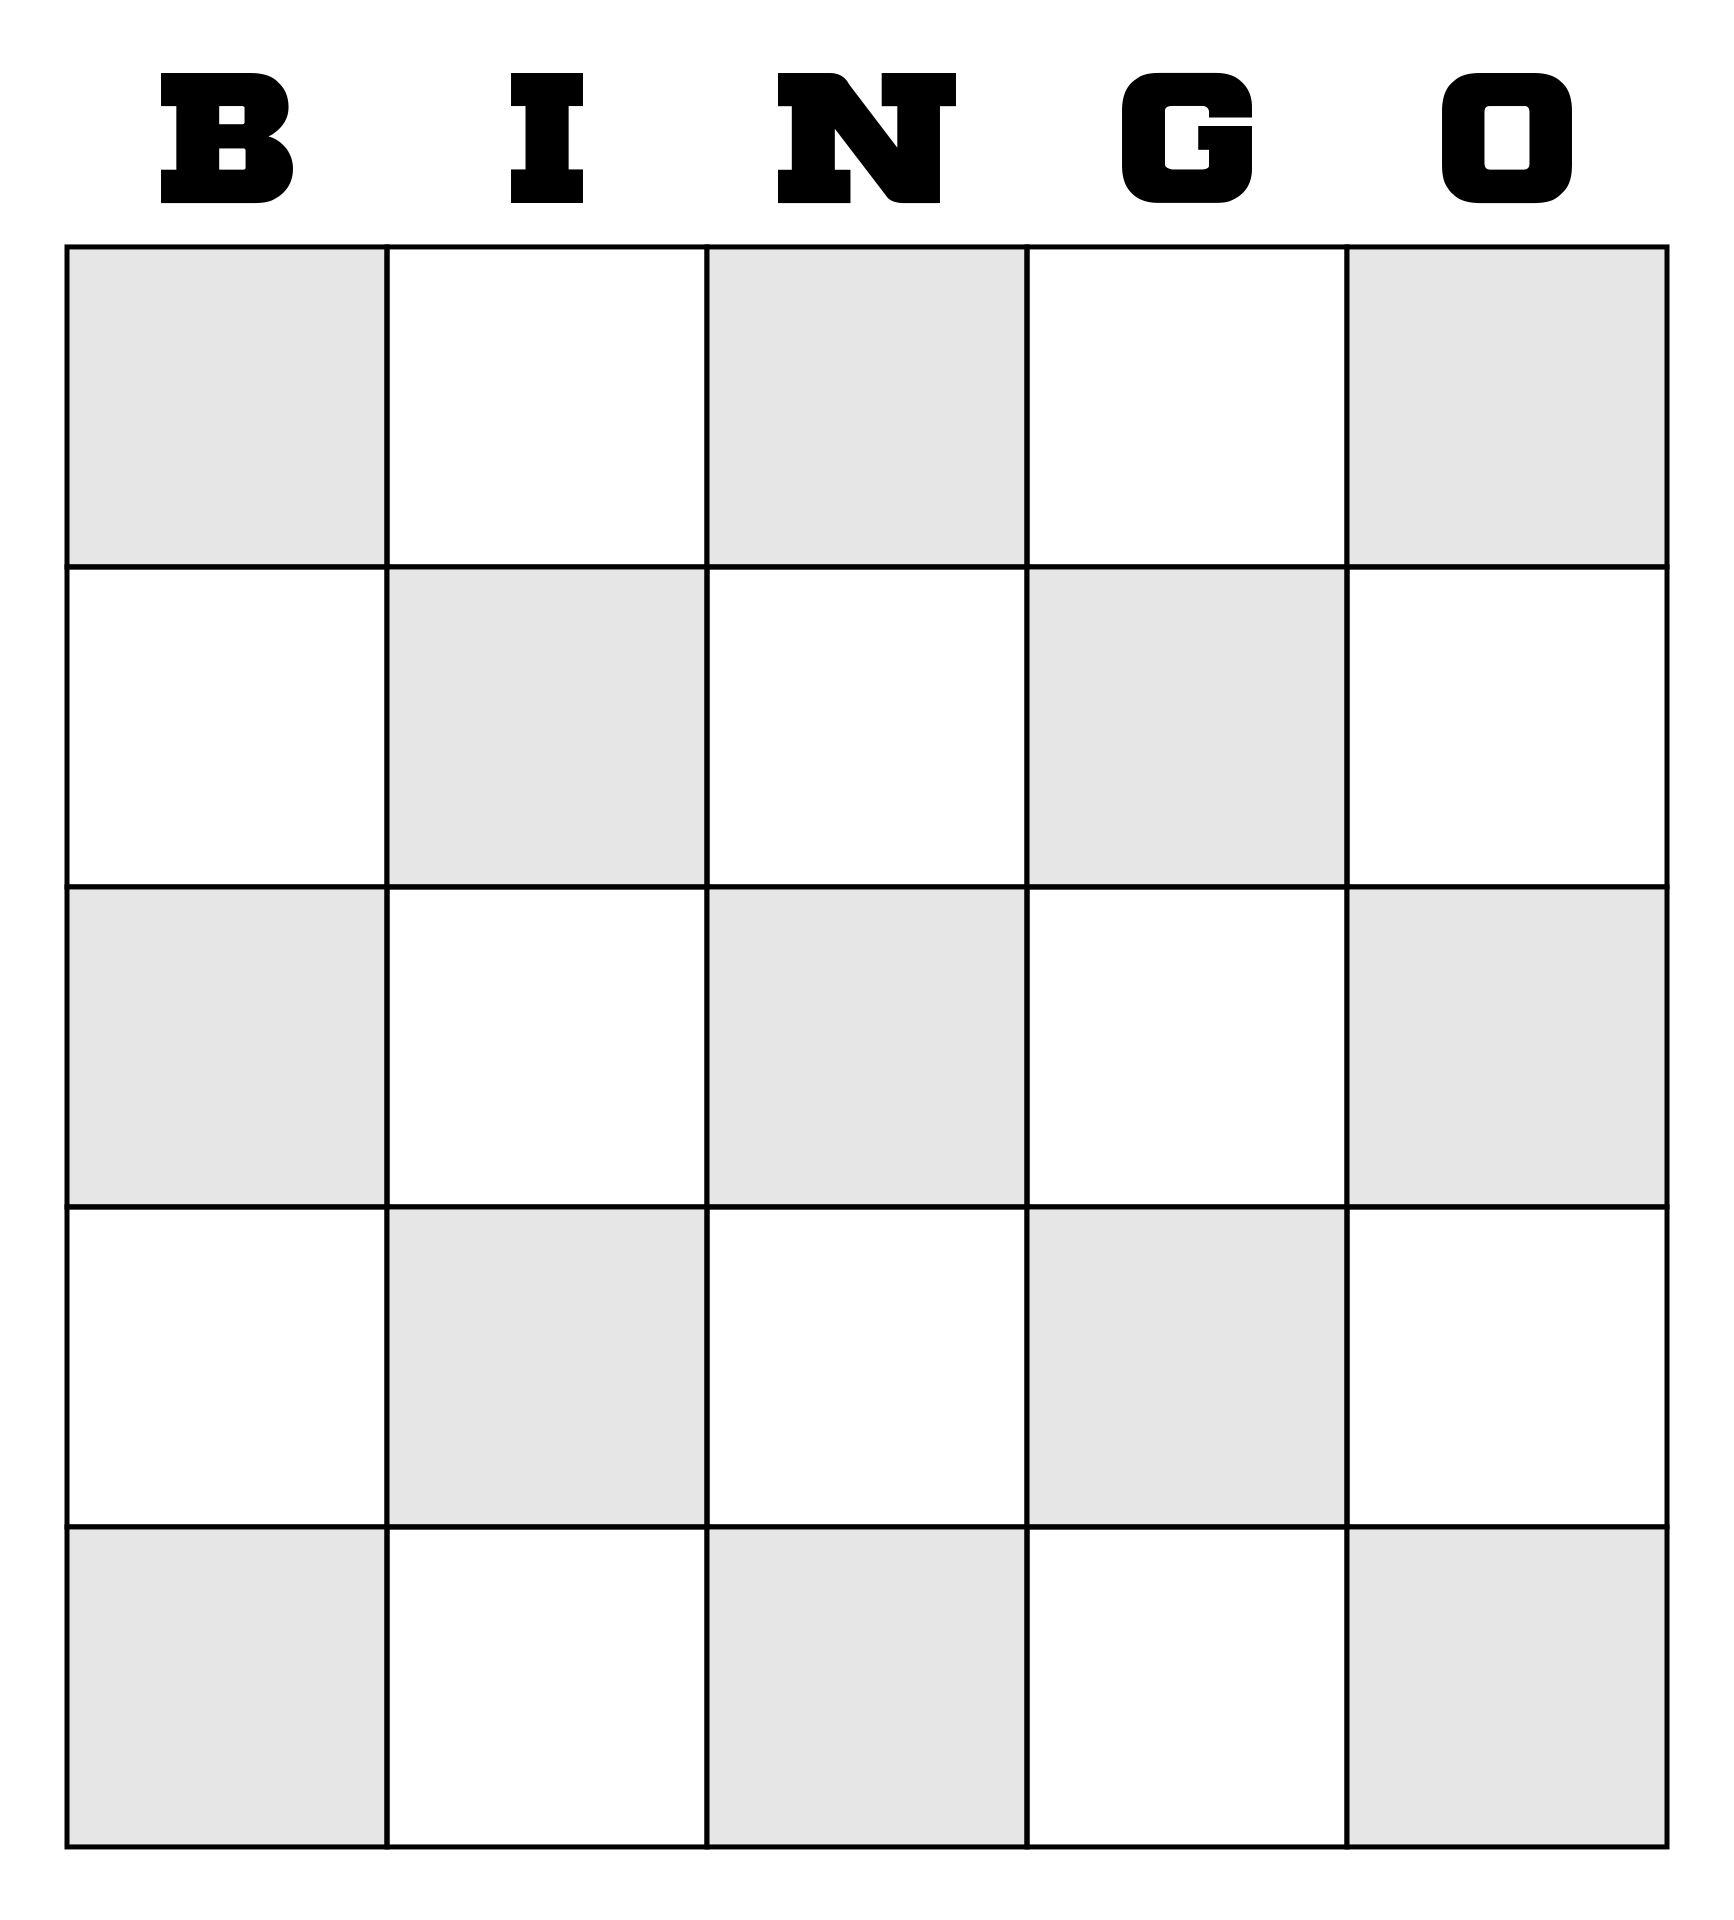 9 Best Images of Printable Human Bingo Templates - Human Bingo ...